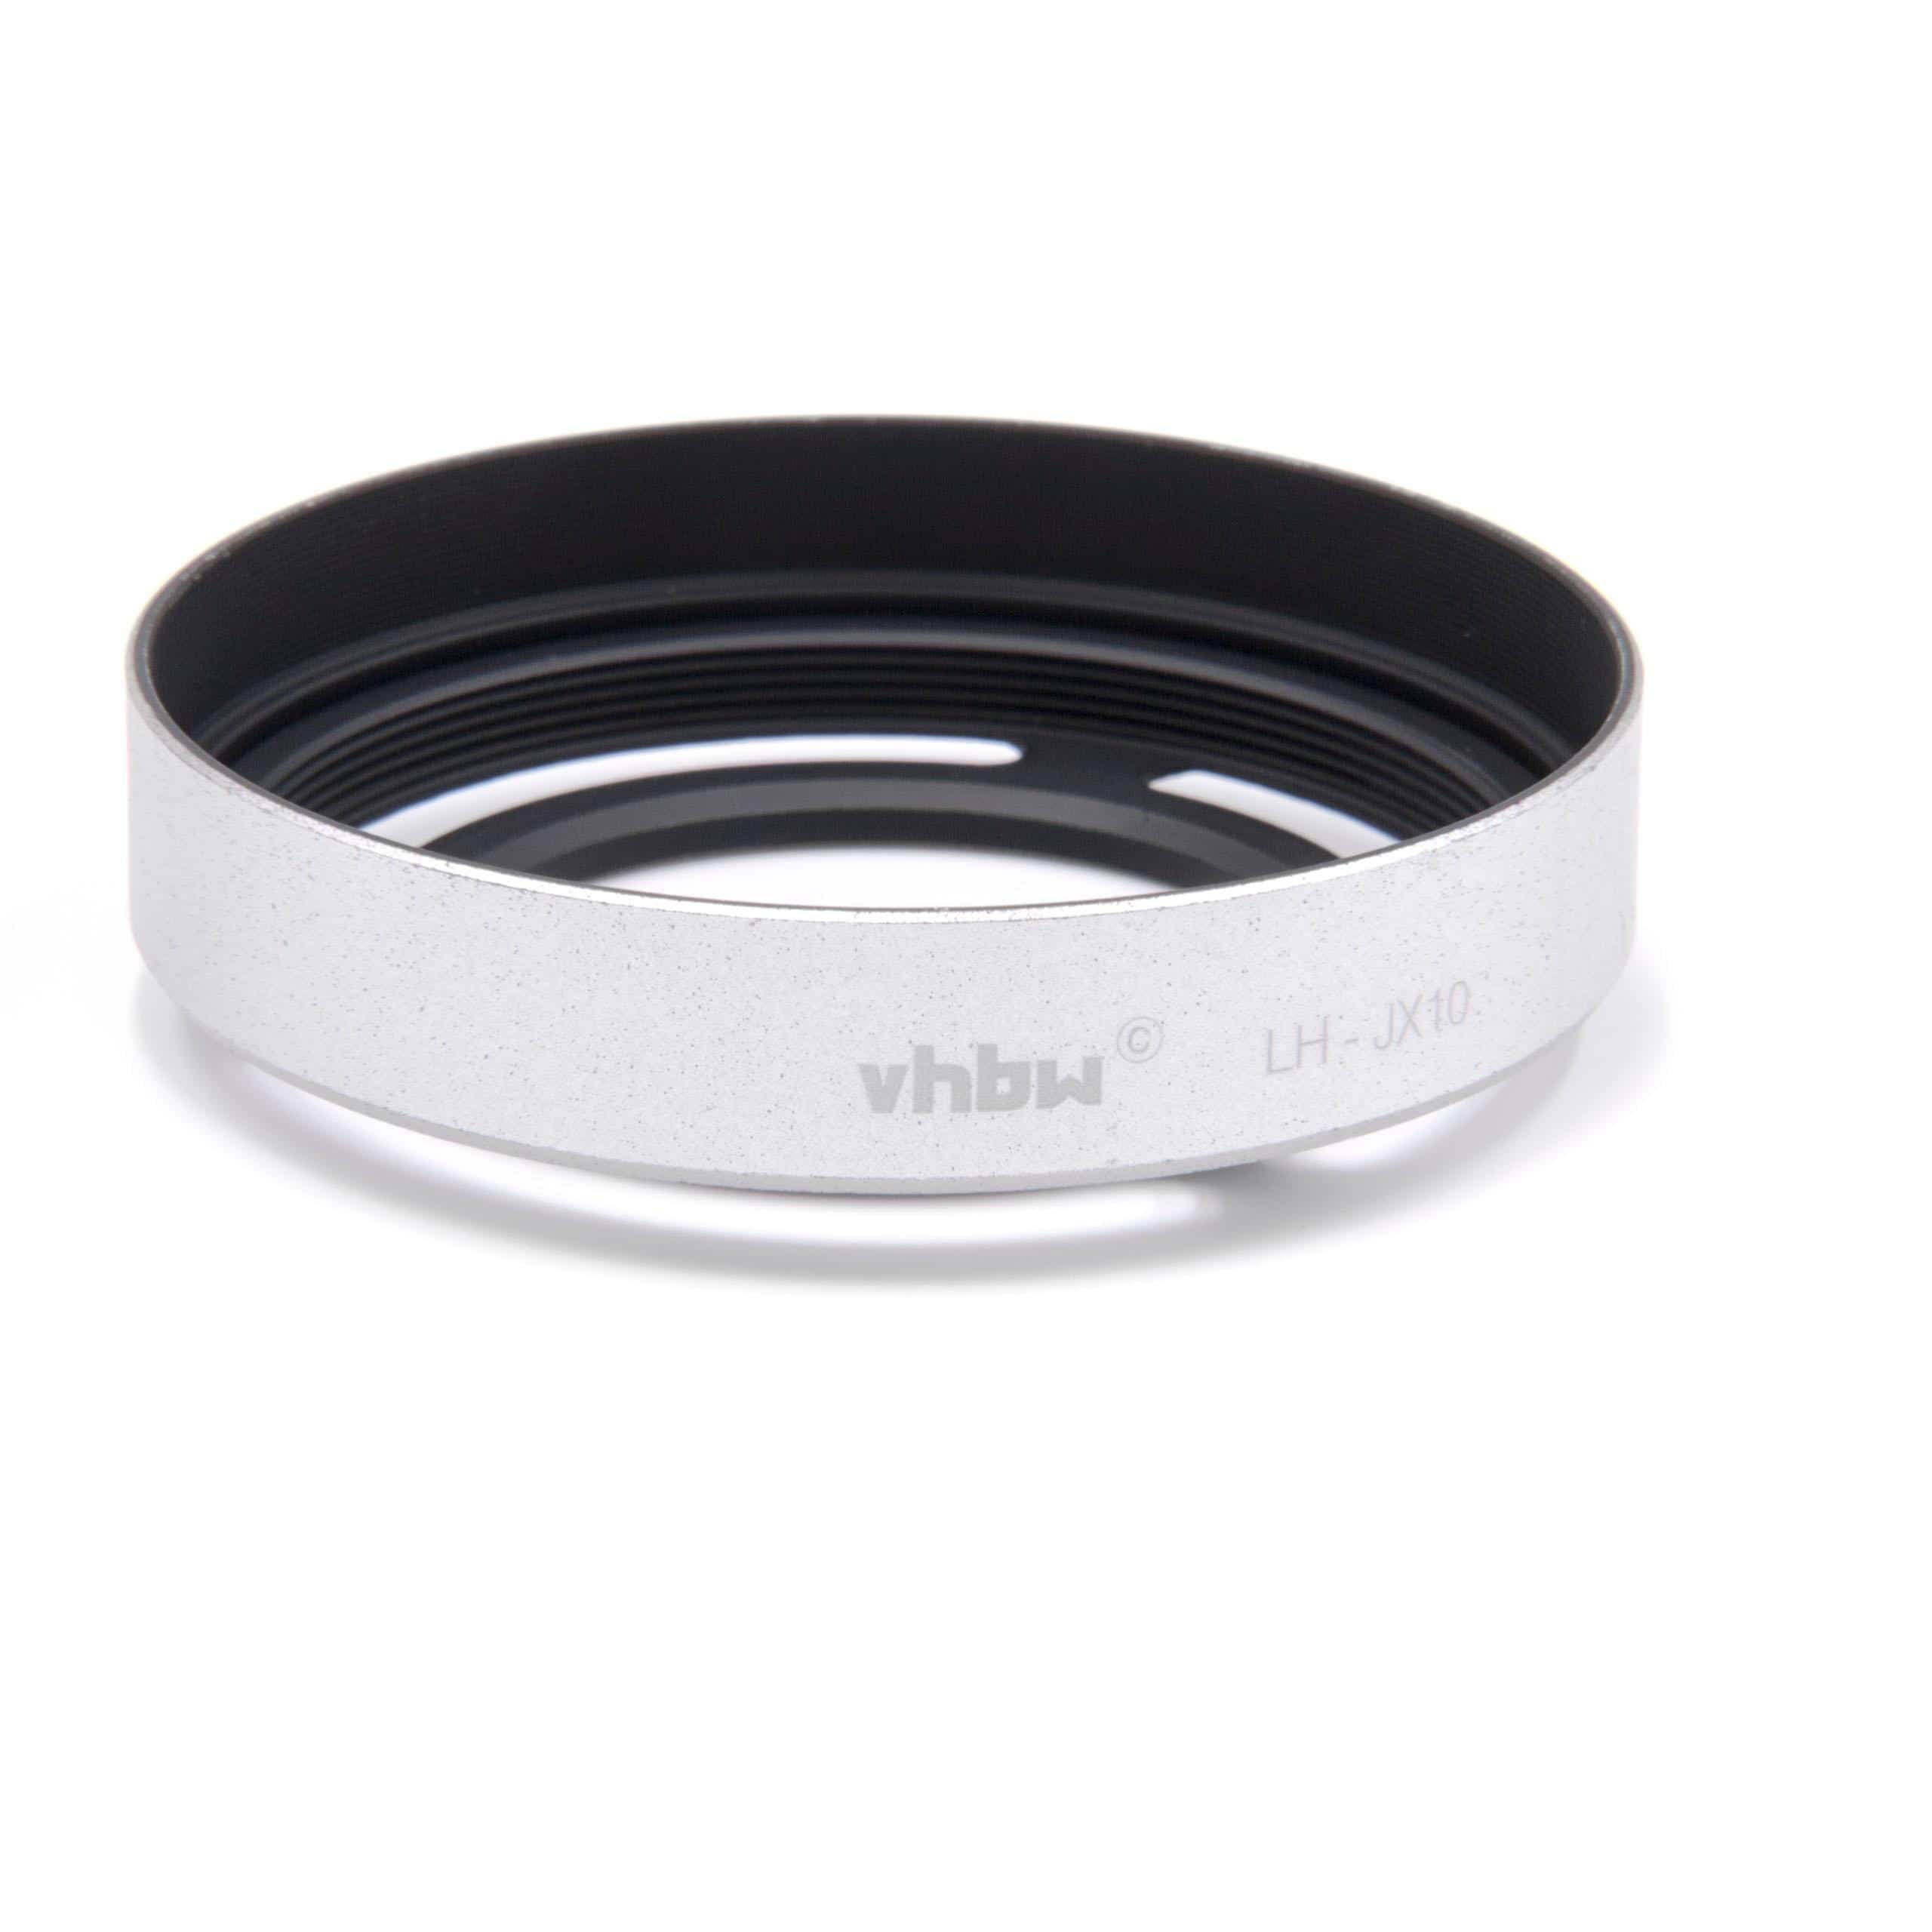 Lens Hood as Replacement for Fuji / Fujifilm Lens LH-X10